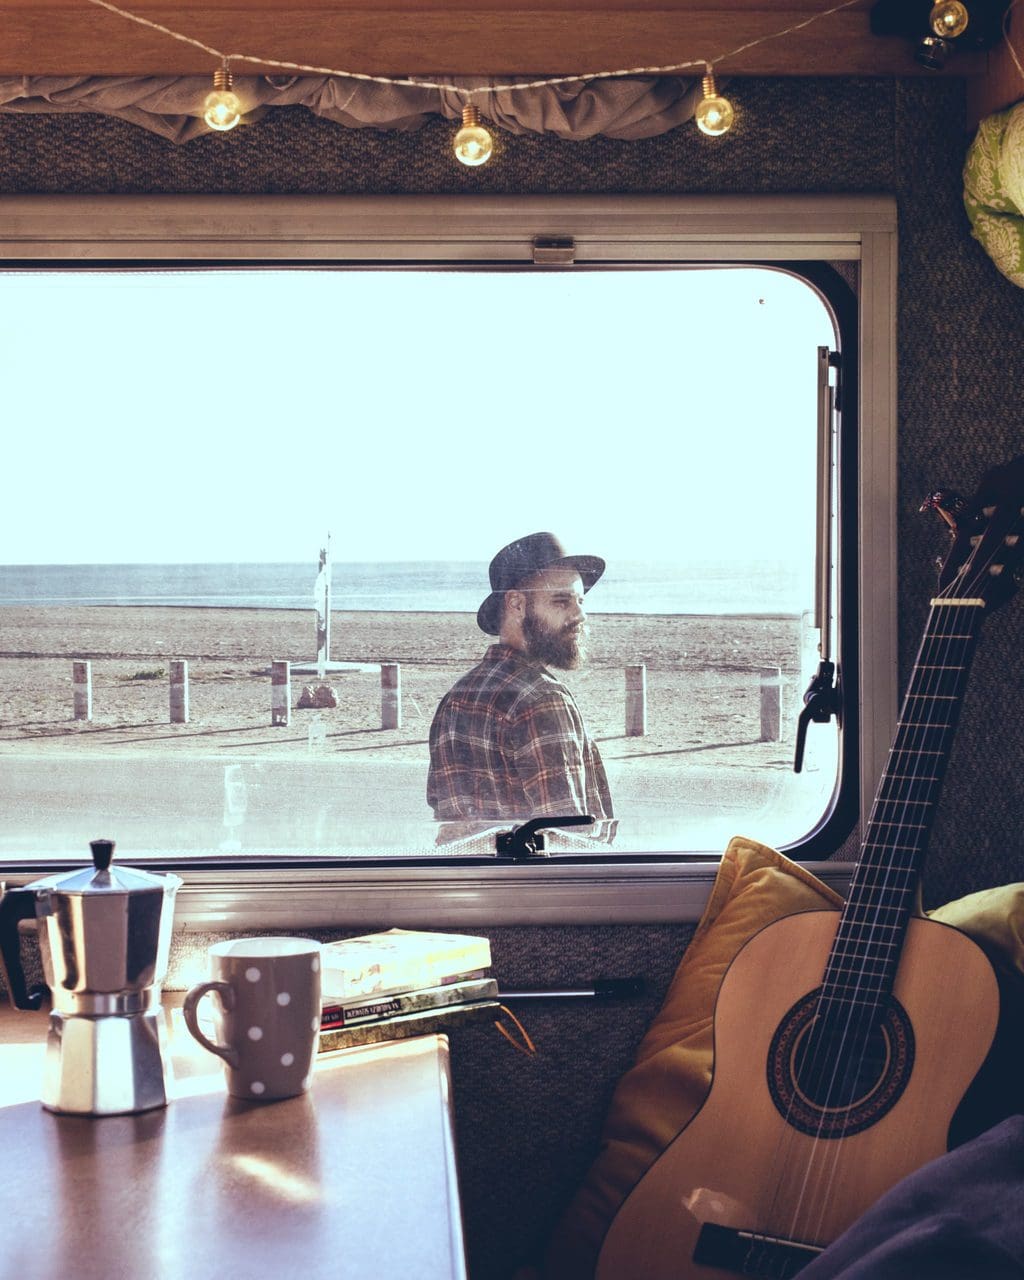 Koffietafel en gitaar vanuit een campervan opgenomen